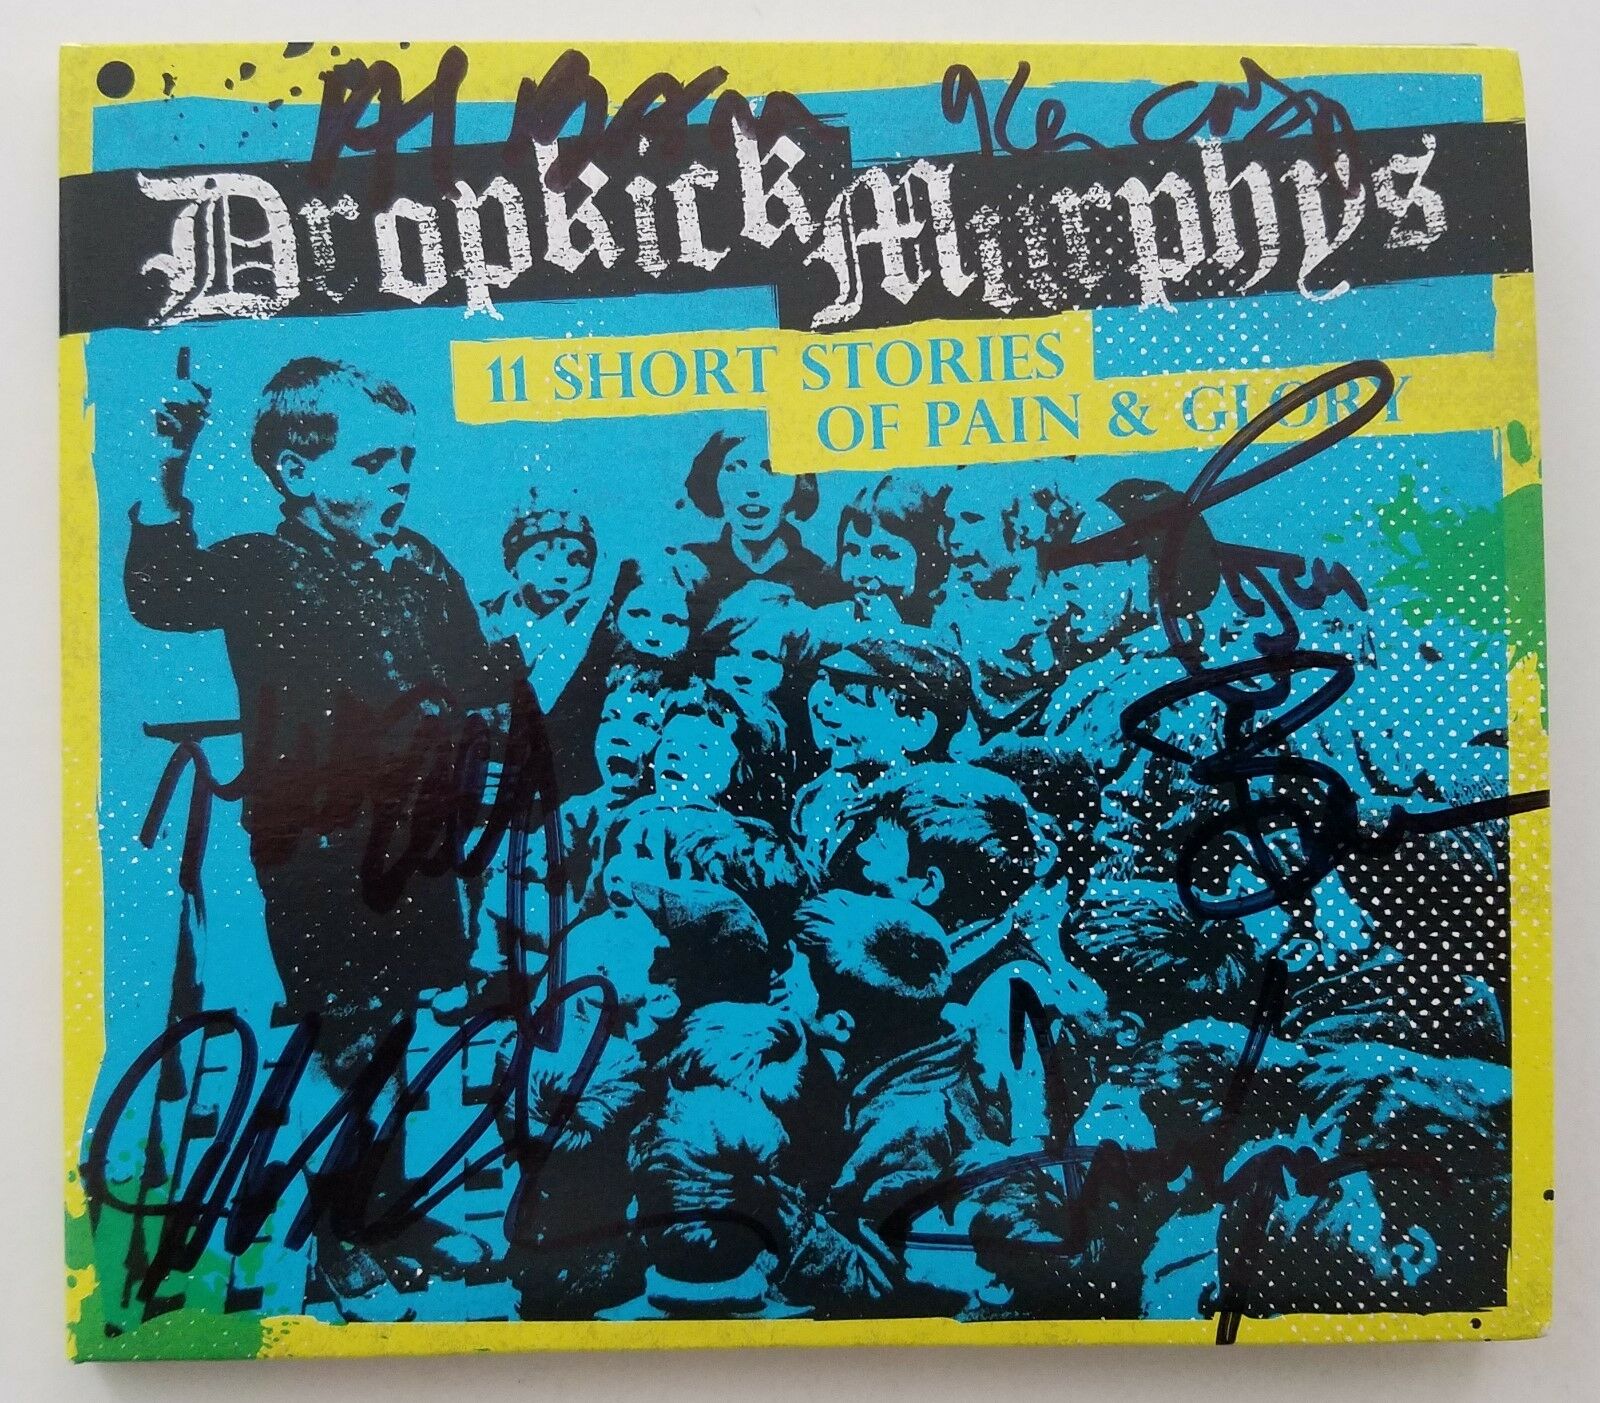 16082 Dropkick Murphys Boxing Club Punk Music Band Embroidered Iron On Patch New